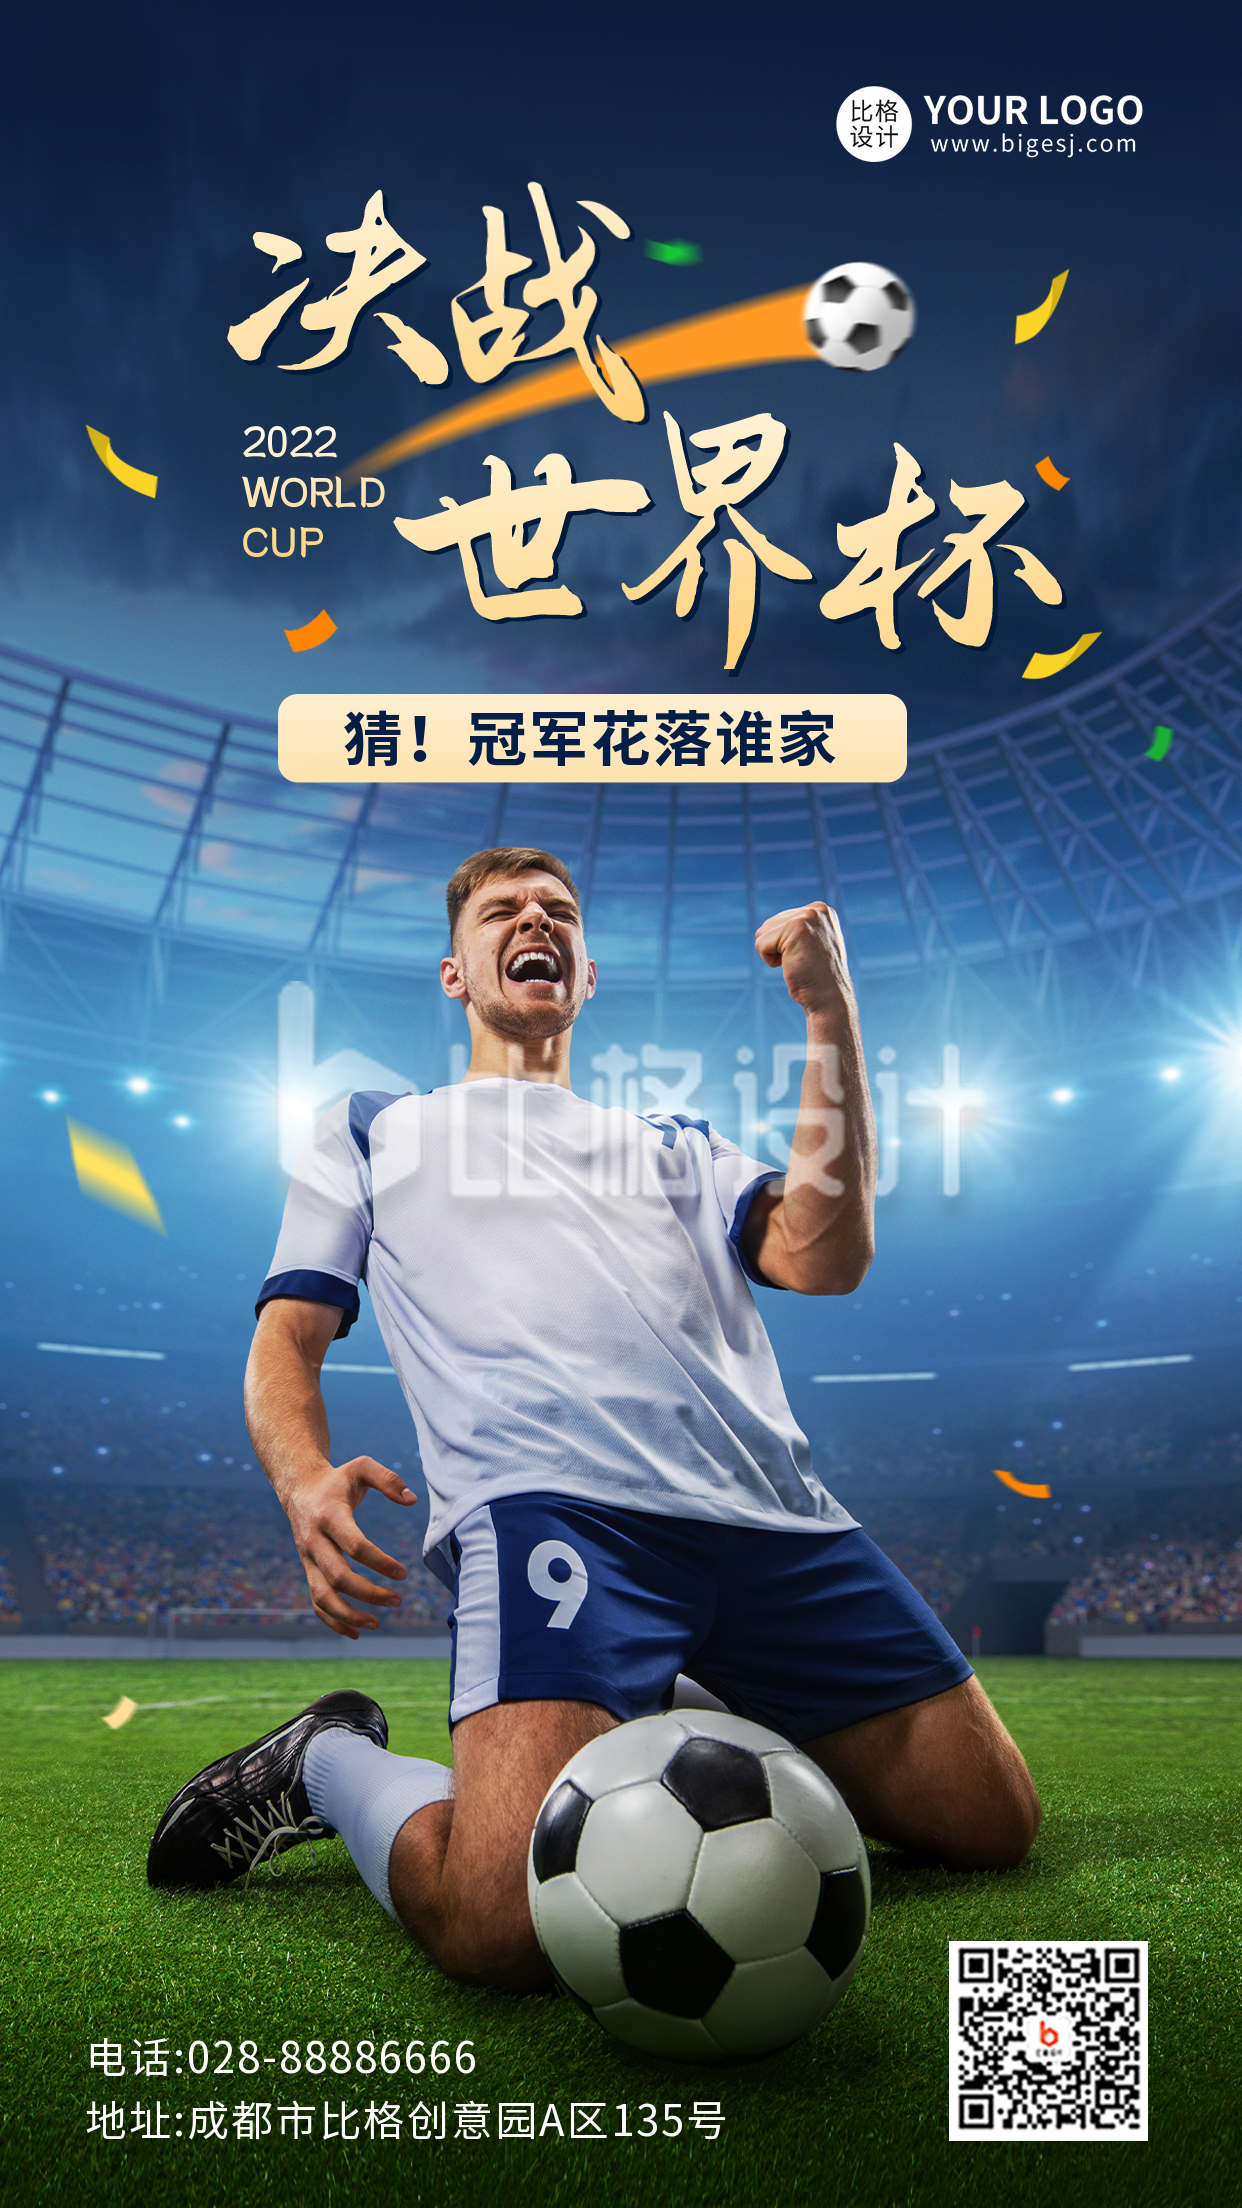 决战世界杯有奖竞猜活动宣传手机海报